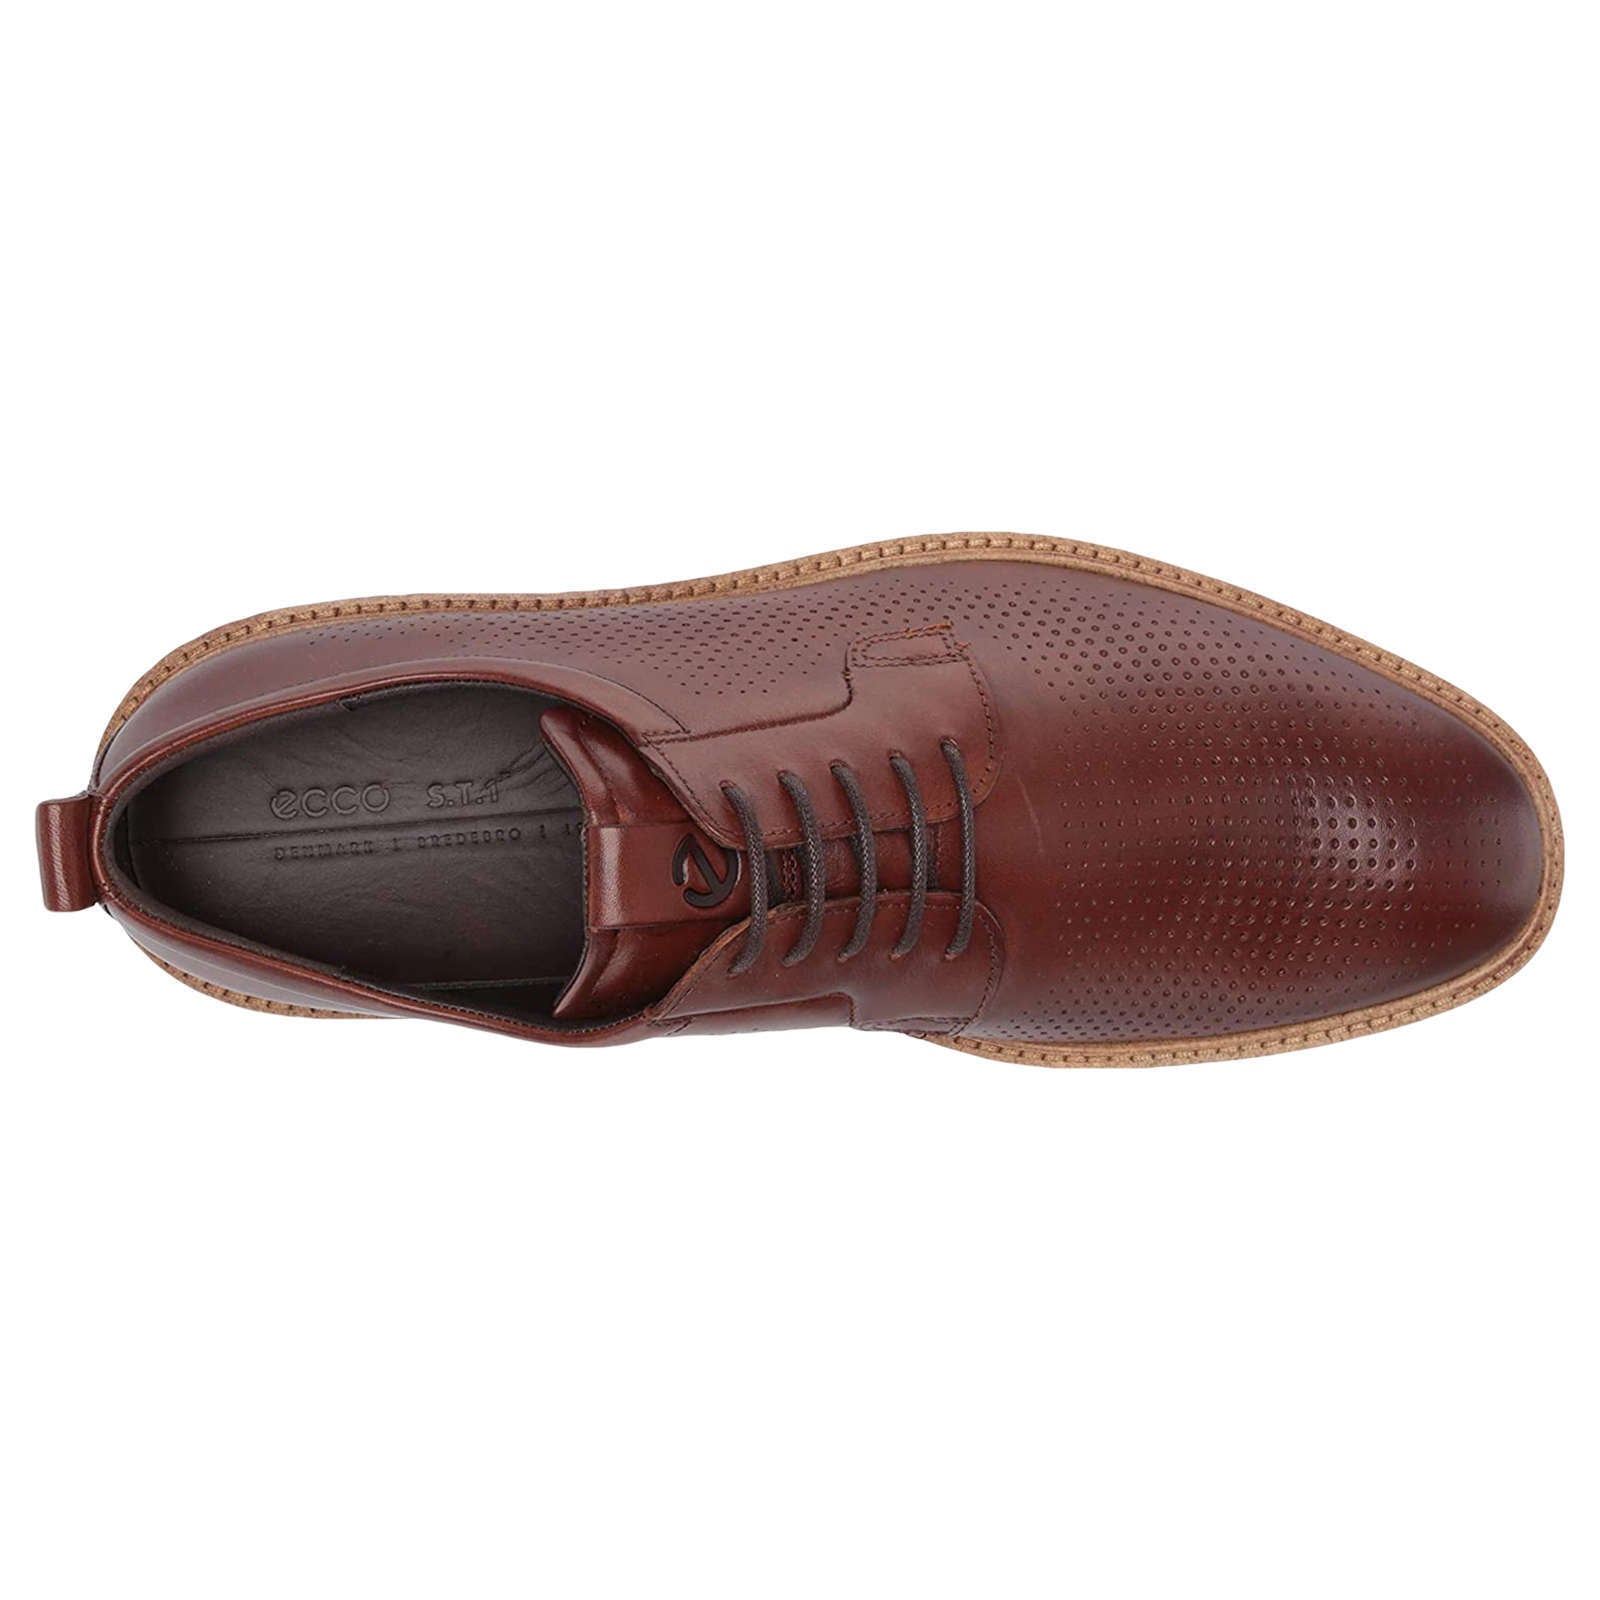 Ecco ST 1 Hybrid 836804 Leather Mens Shoes#color_cognac